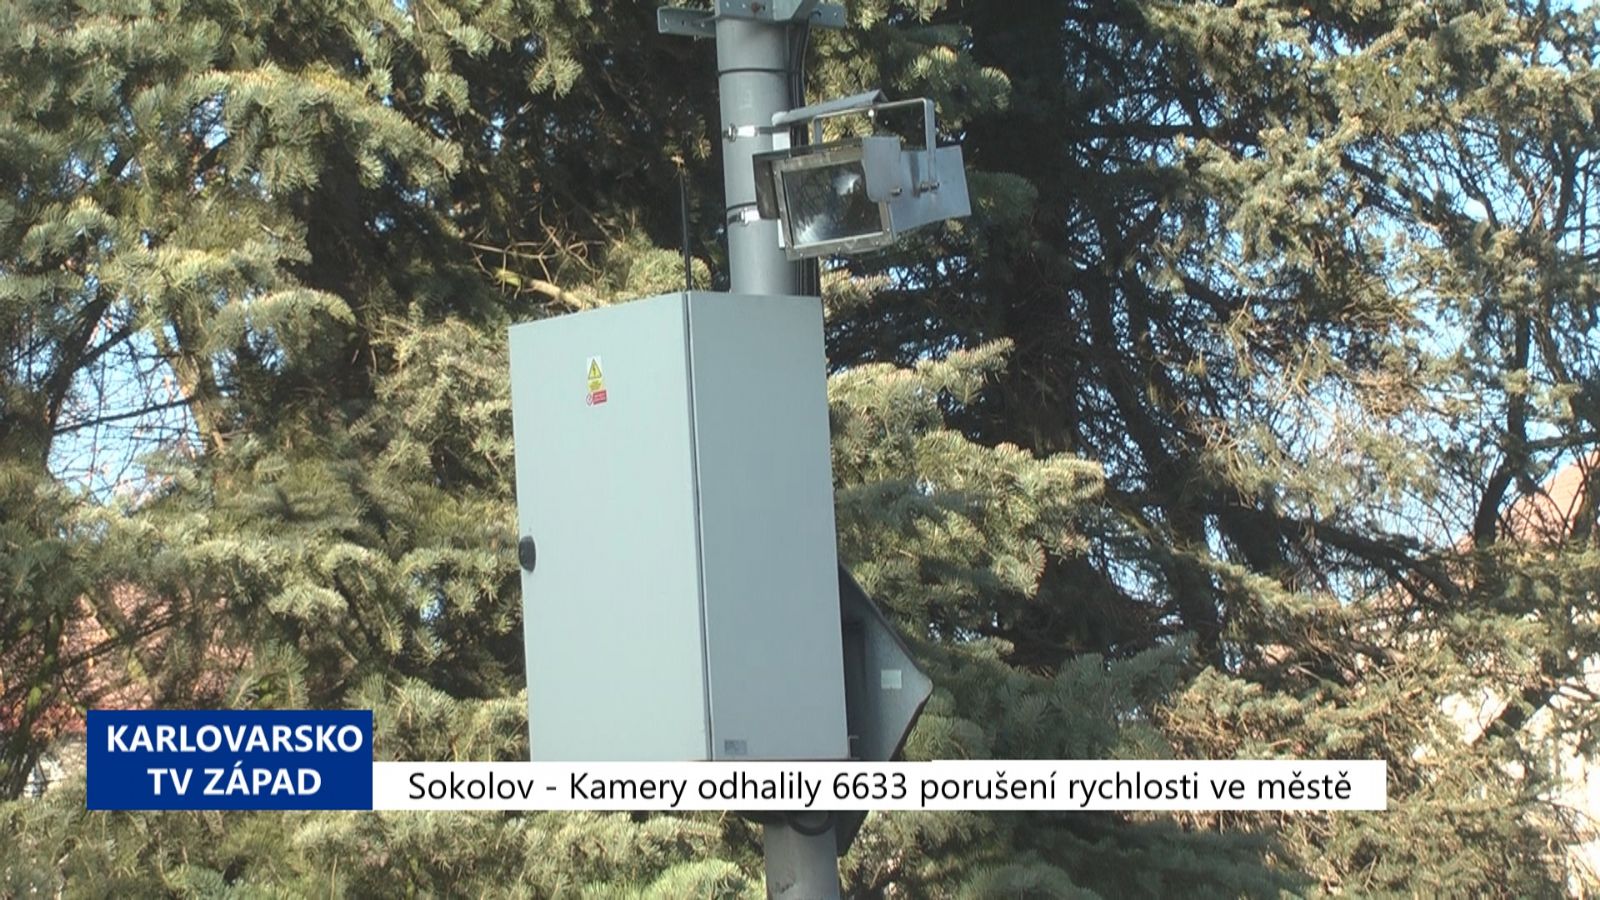 Sokolov: Kamery odhalily 6633 porušení rychlosti ve městě (TV Západ)